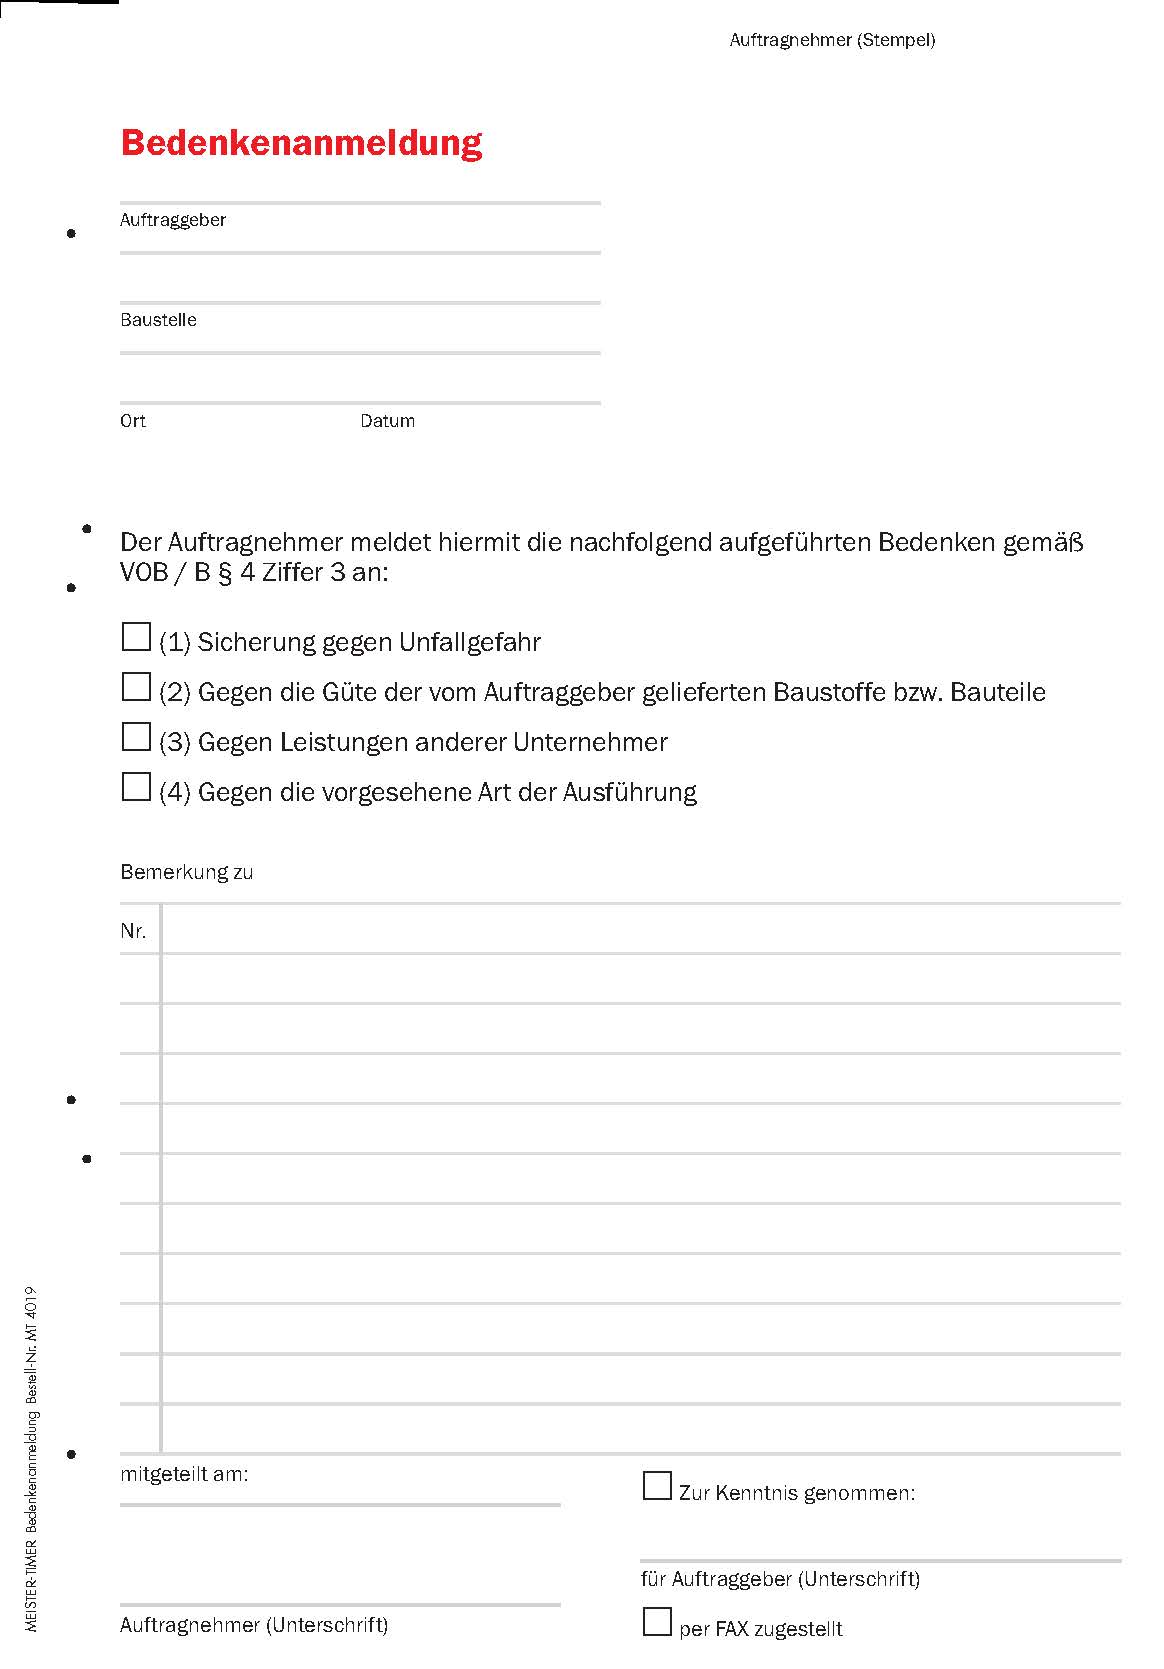 MeisterTimer edition "handwerk magazin" - Zeit- und Aufgabenplanungssystem